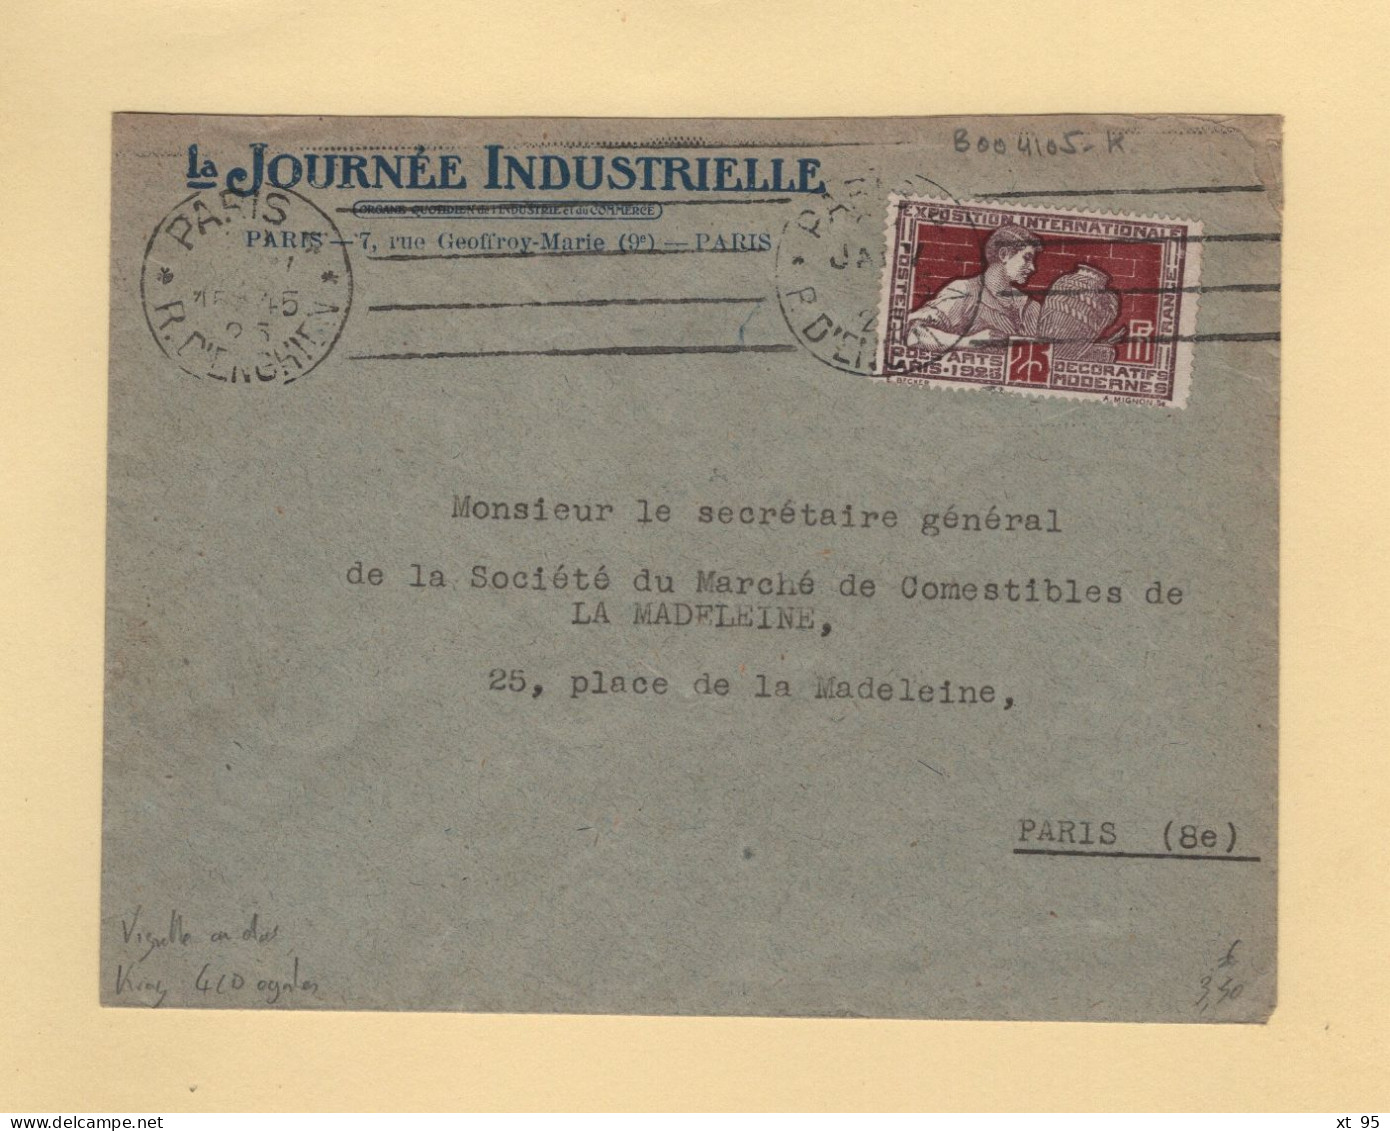 Krag - Paris 4 - 1925 - 4 Lignes Droites Inegales - Journee Industrielle - Vignette Au Dos - Mechanische Stempels (reclame)